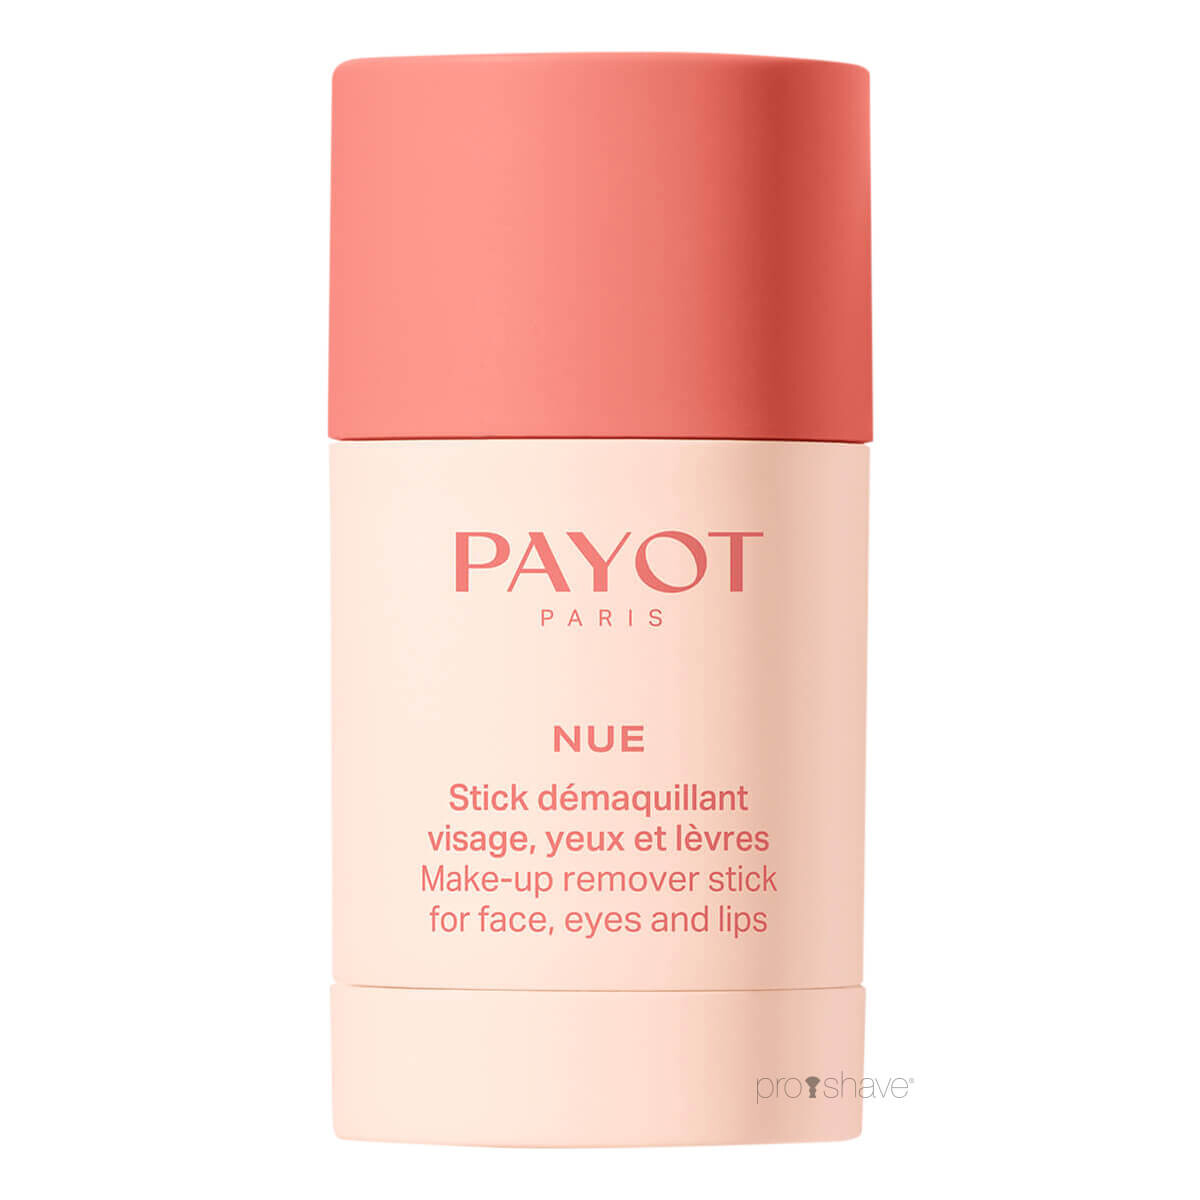 Se Payot Nue Make-Up Remover Stick, 50 gr. hos Proshave